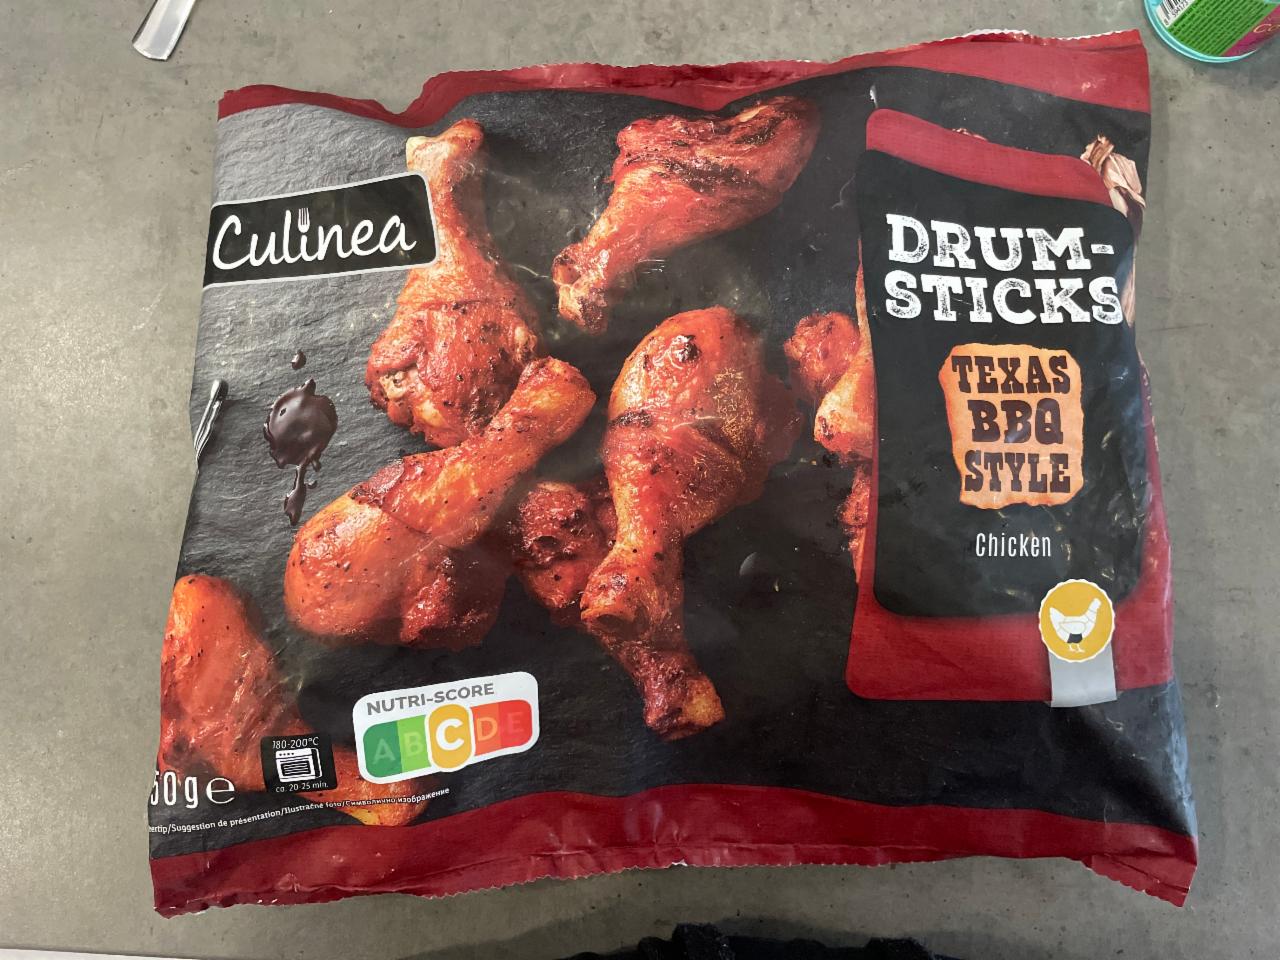 Fotografie - Drum sticks Texas BBQ Style Chicken Culinea